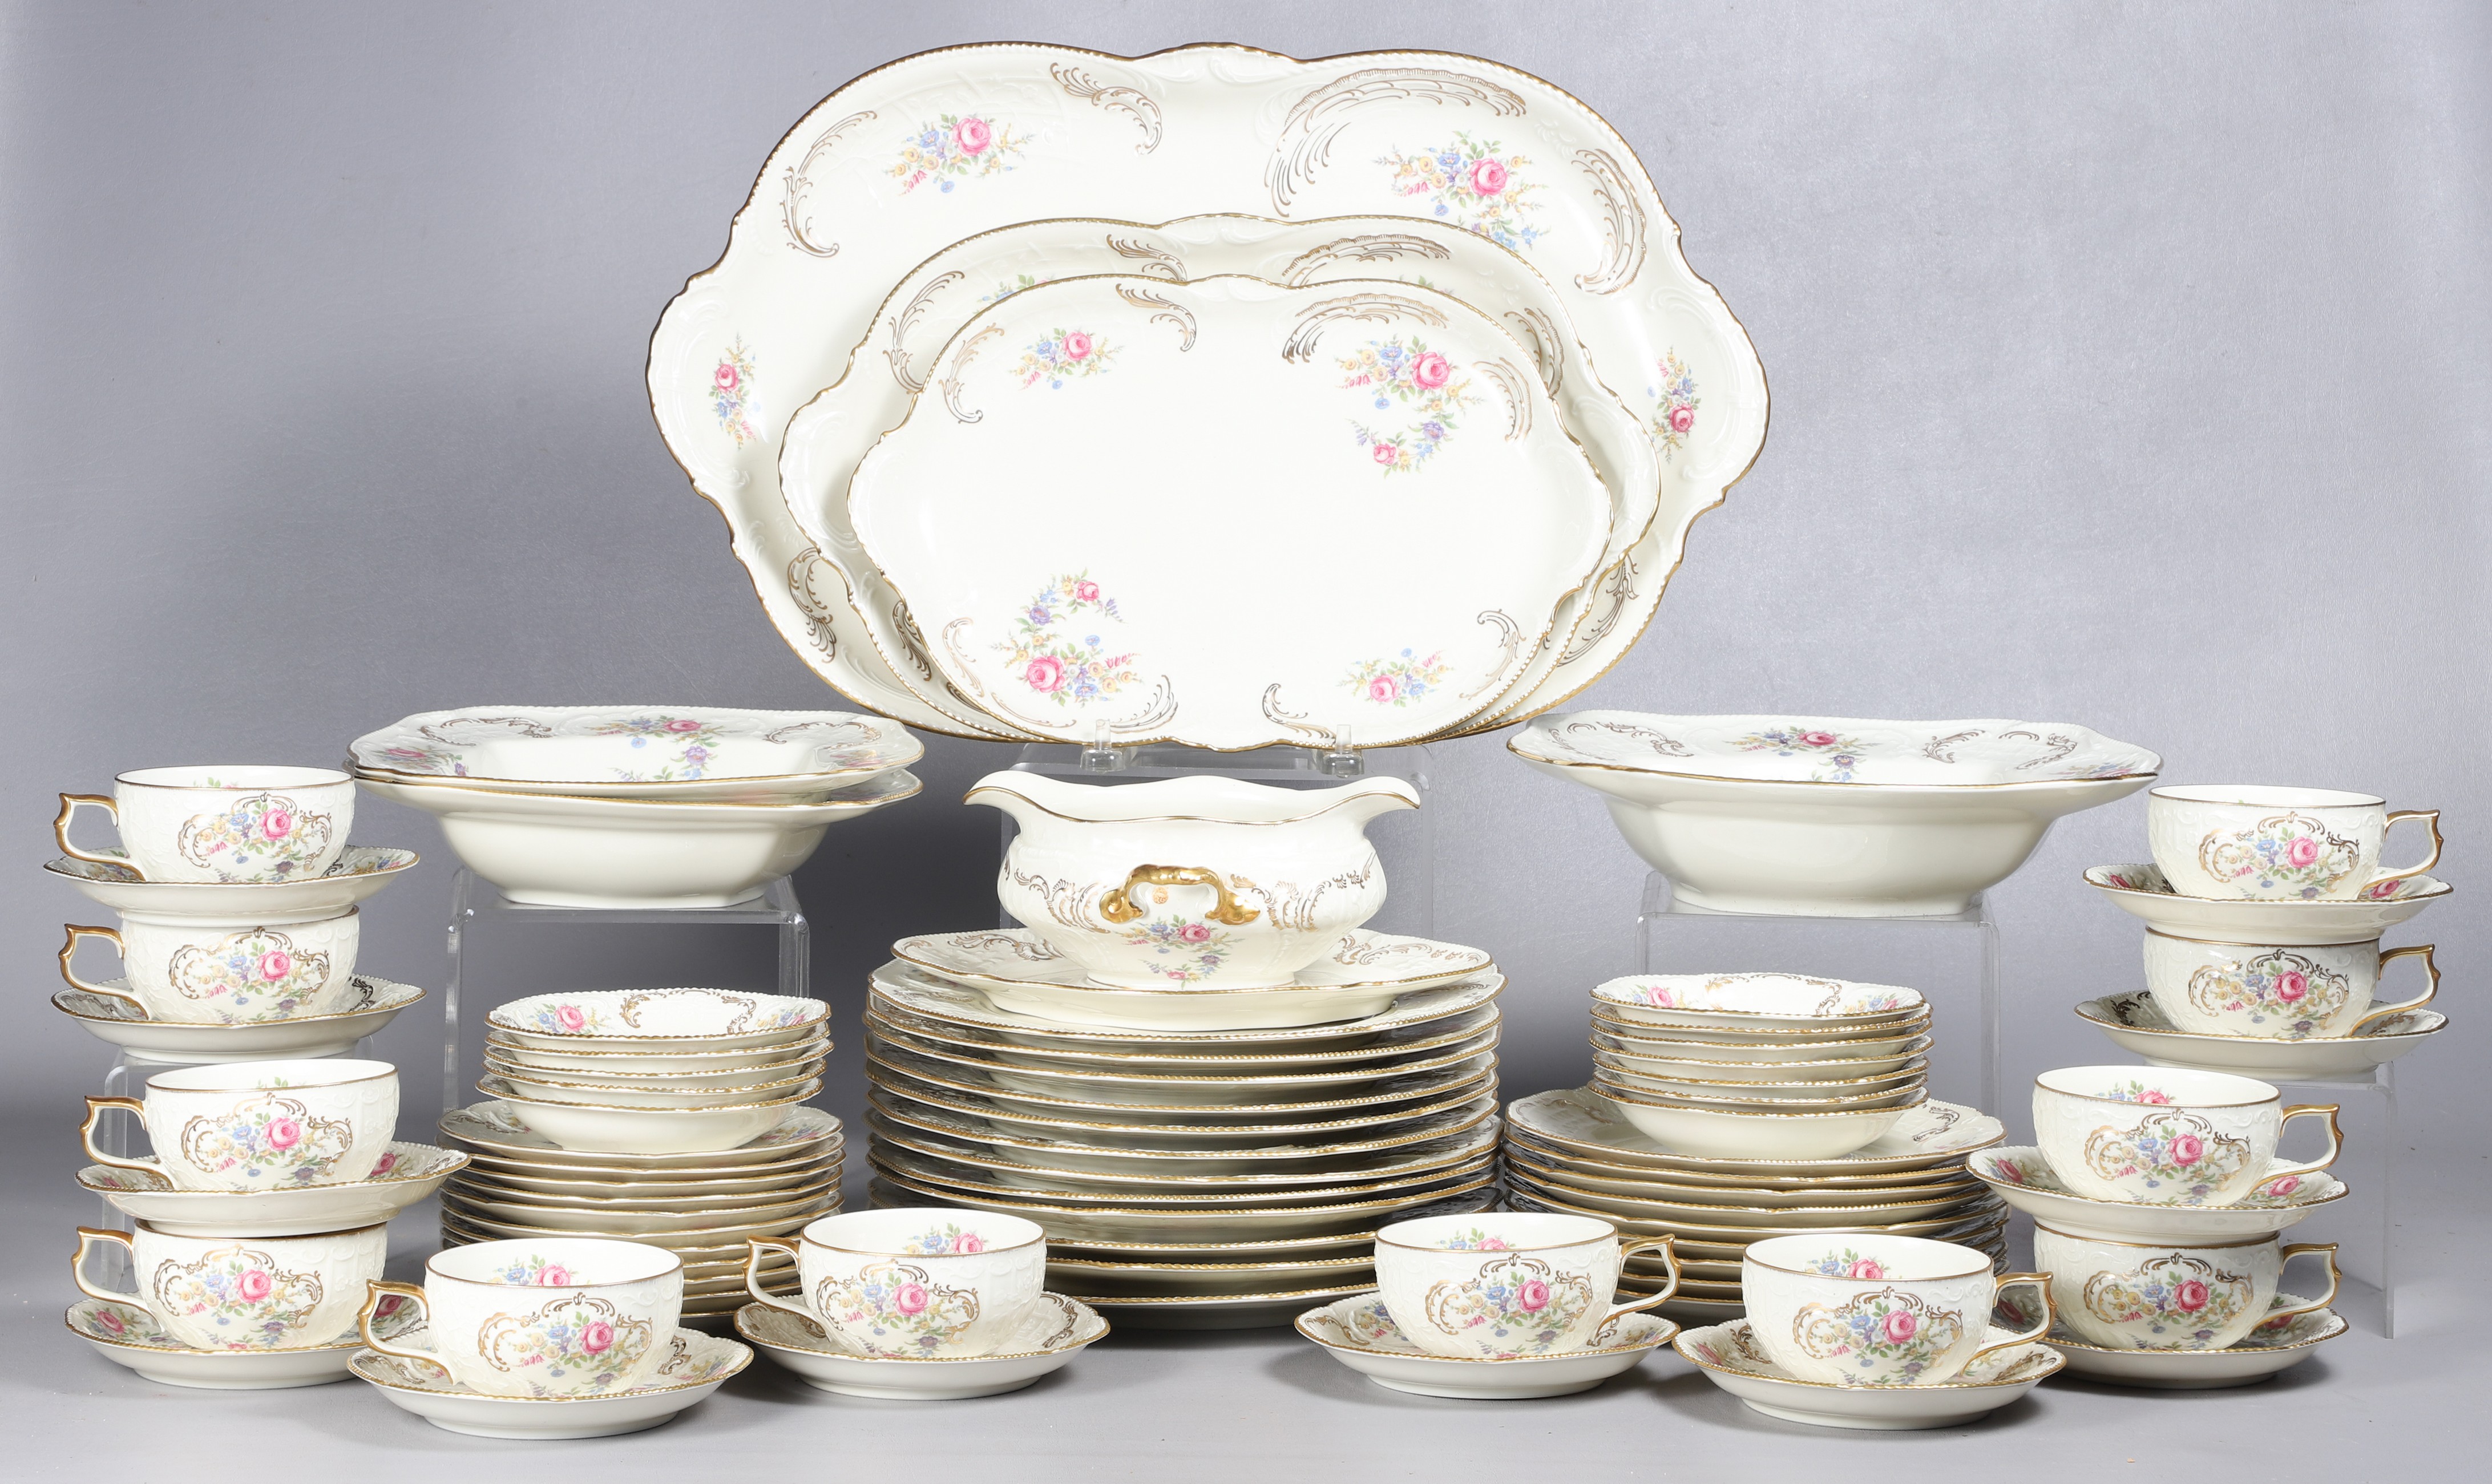  75 Pcs Rosenthal porcelain dinnerware  2e10d0